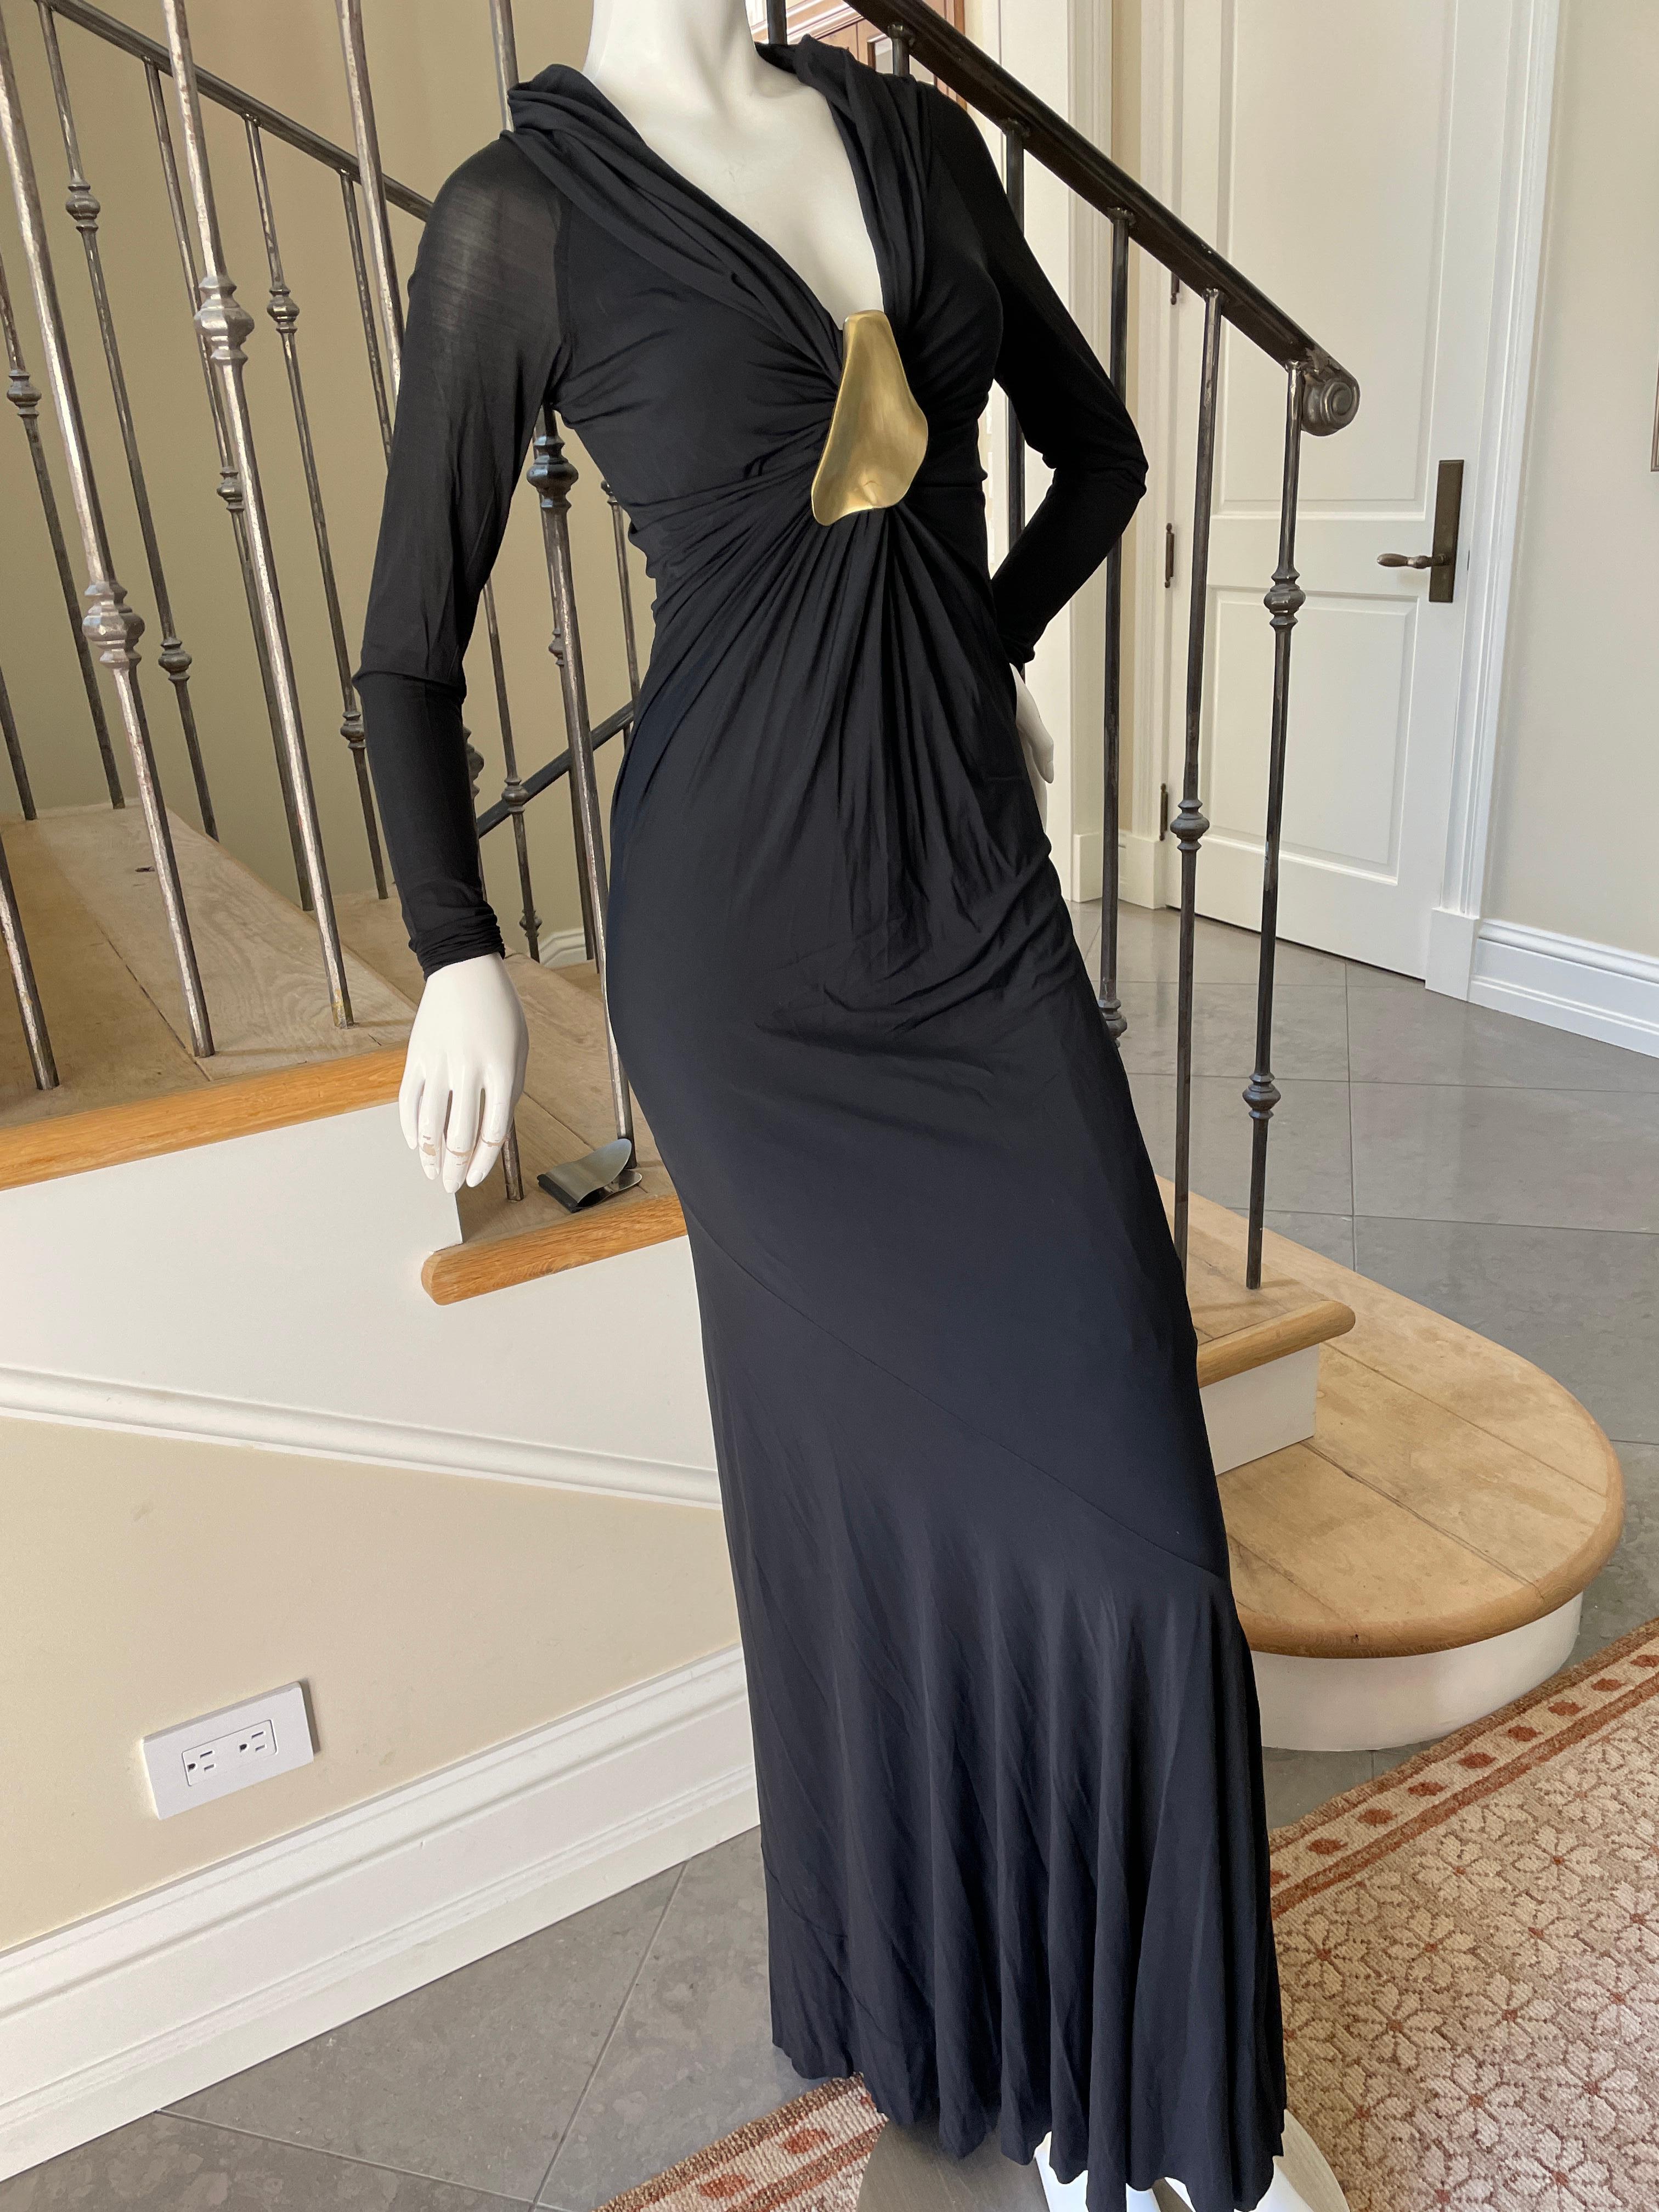 Donna Karan Vintage Black Dress w Plunging Neckline & Robert Lee Morris Ornament For Sale 2